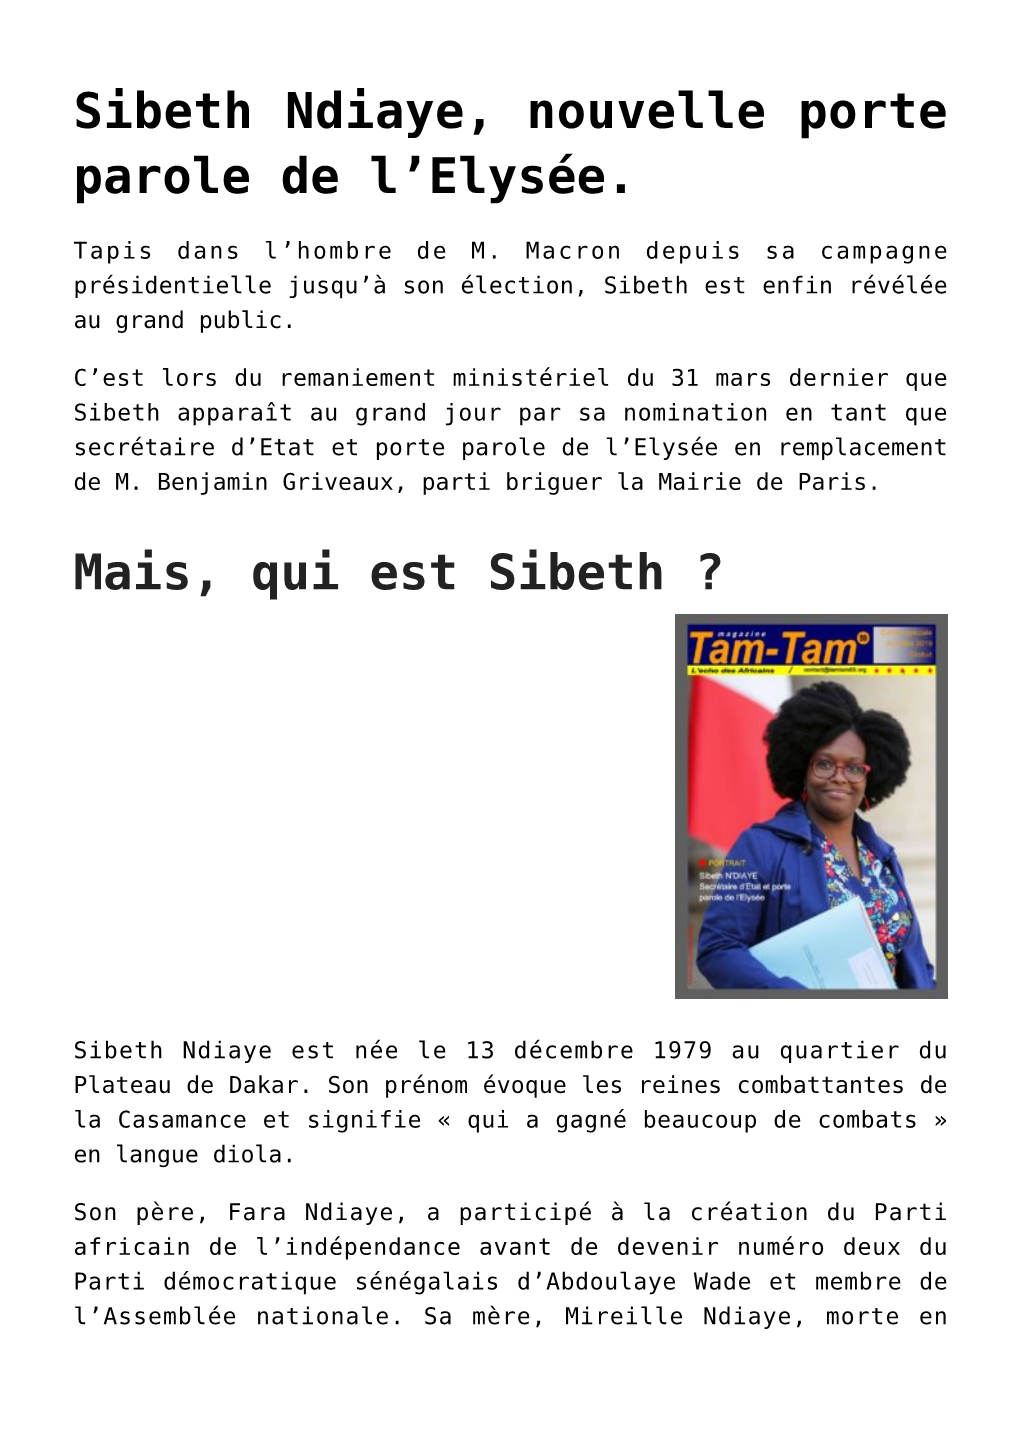 Sibeth Ndiaye, Nouvelle Porte Parole De L'elysée